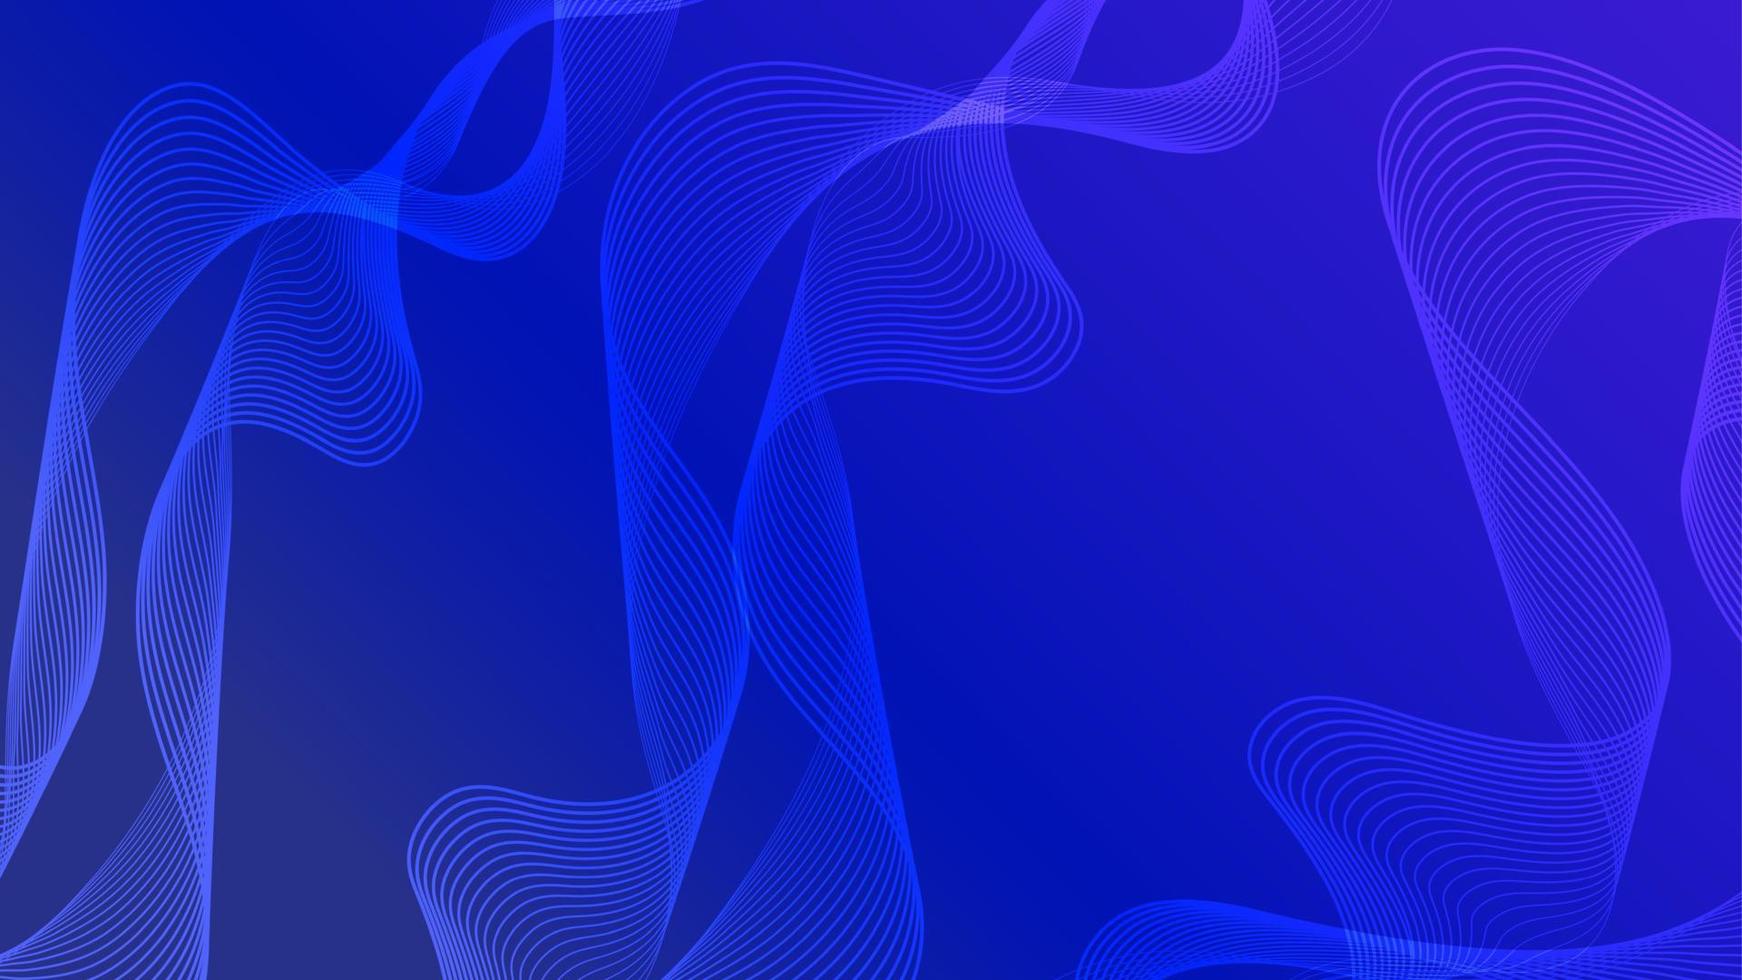 fondo geométrico con textura azul abstracto. vector de diseño de fondo geométrico borroso